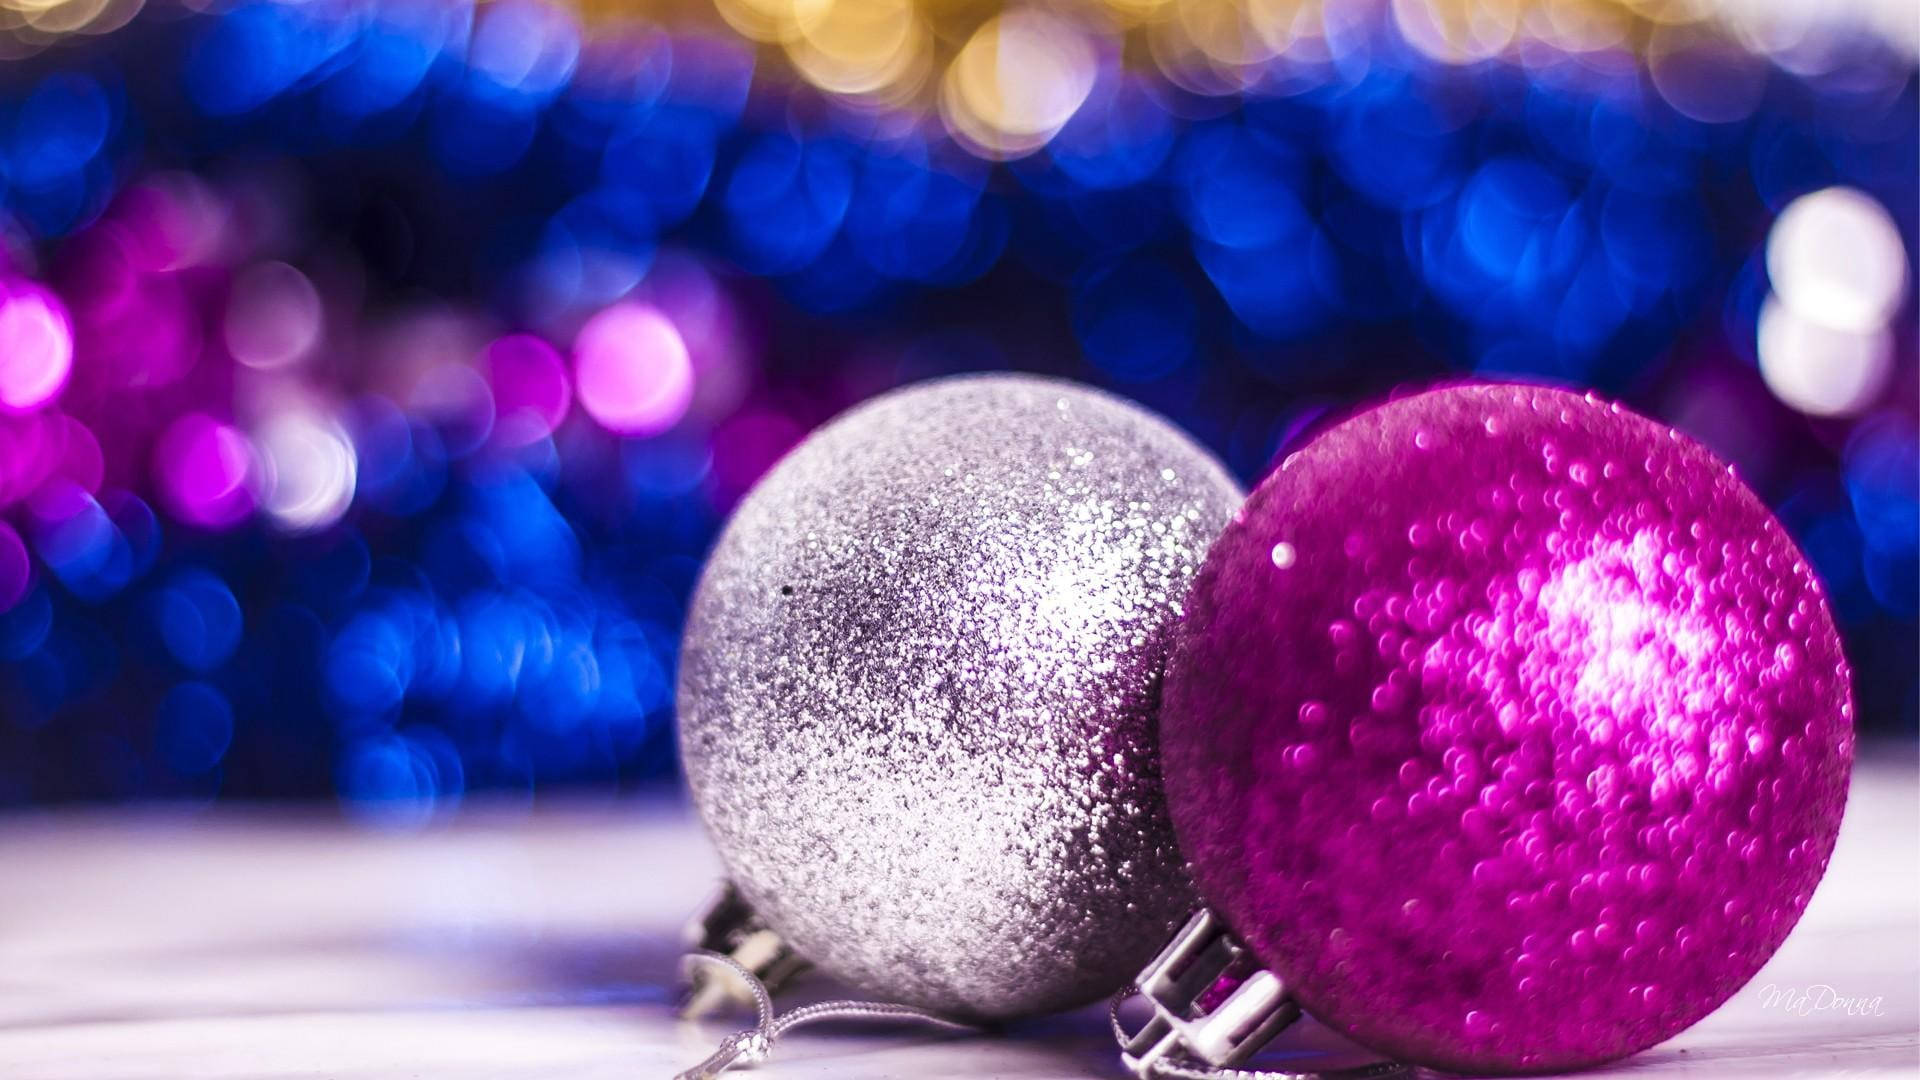 Enchanting Display of Pink Sparkling Christmas Balls Wallpaper